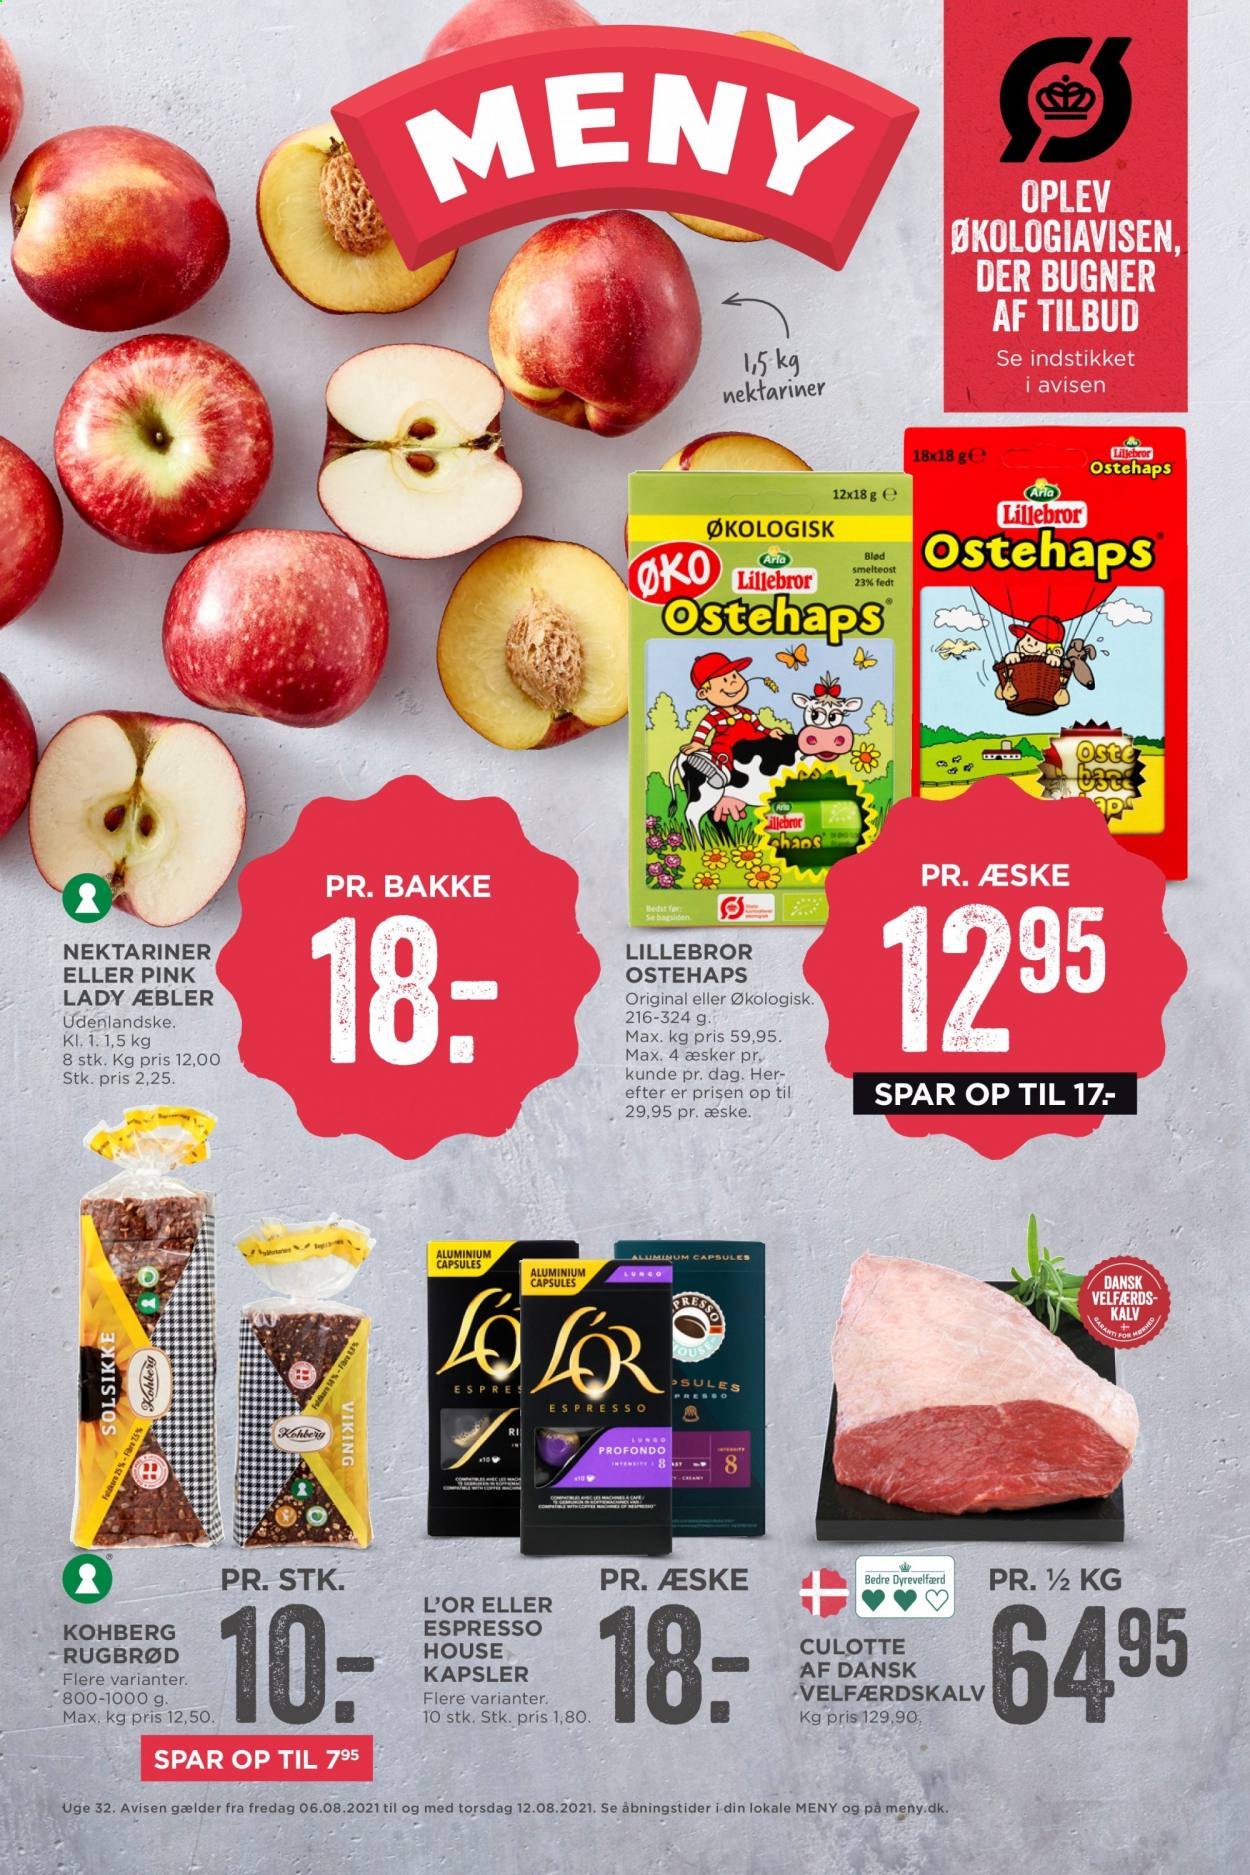 thumbnail - MENY tilbud  - 6.8.2021 - 12.8.2021 - tilbudsprodukter - æbler, nektarin, rugbrød, Arla, espresso. Side 1.